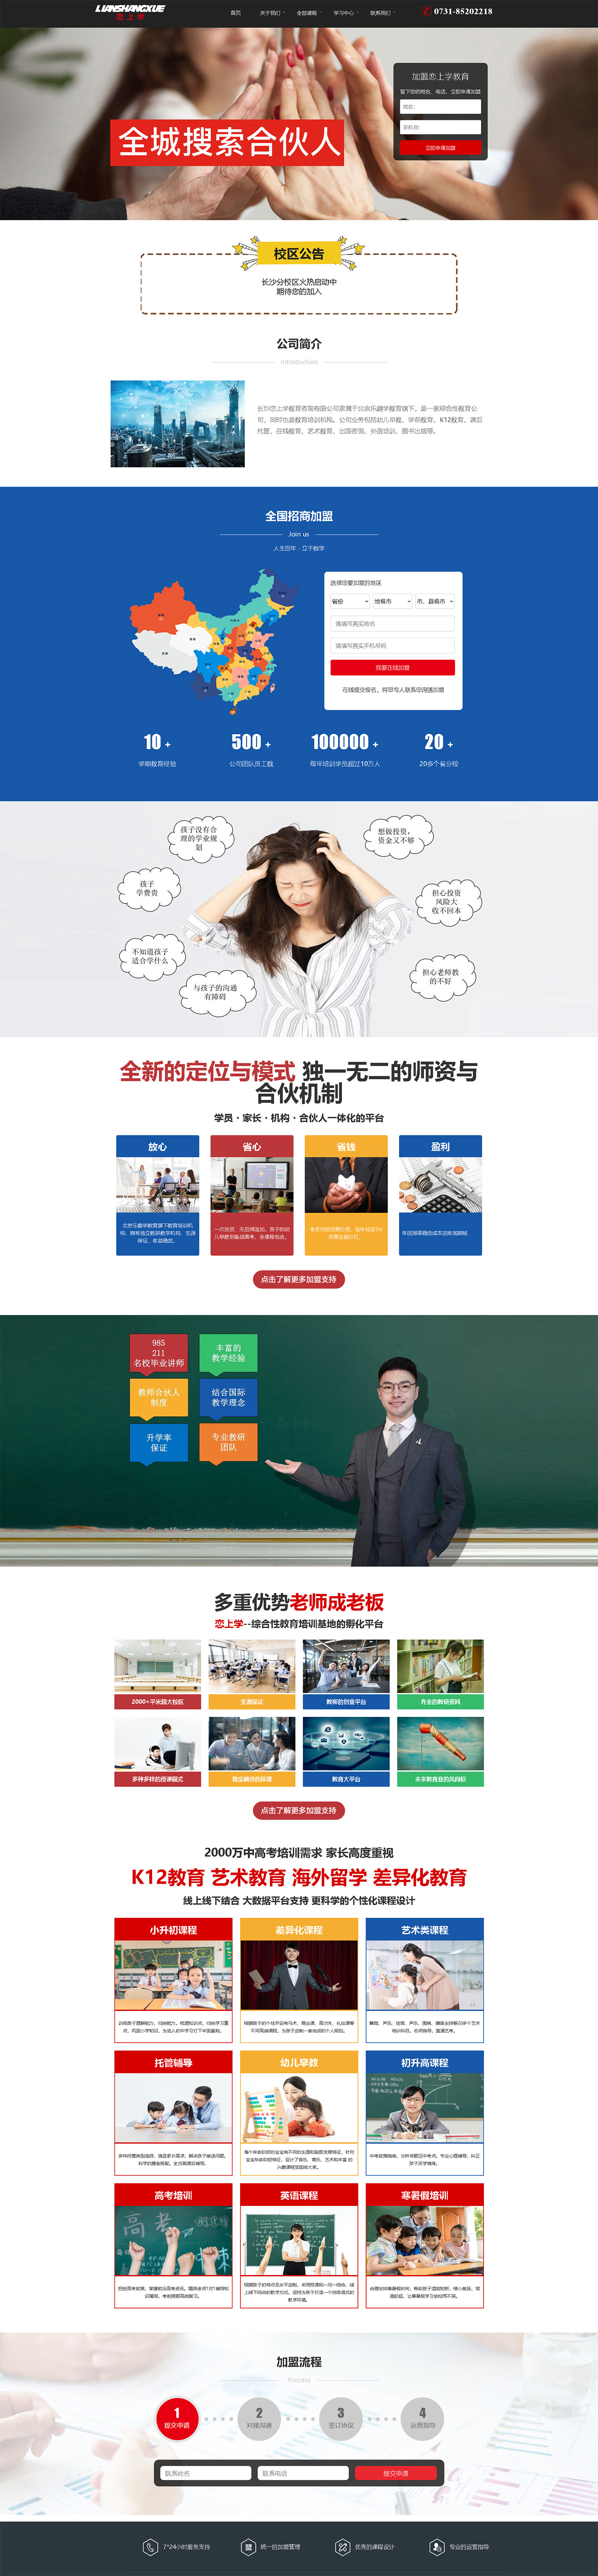 长沙恋上学教育咨询有限公司网站建设案例